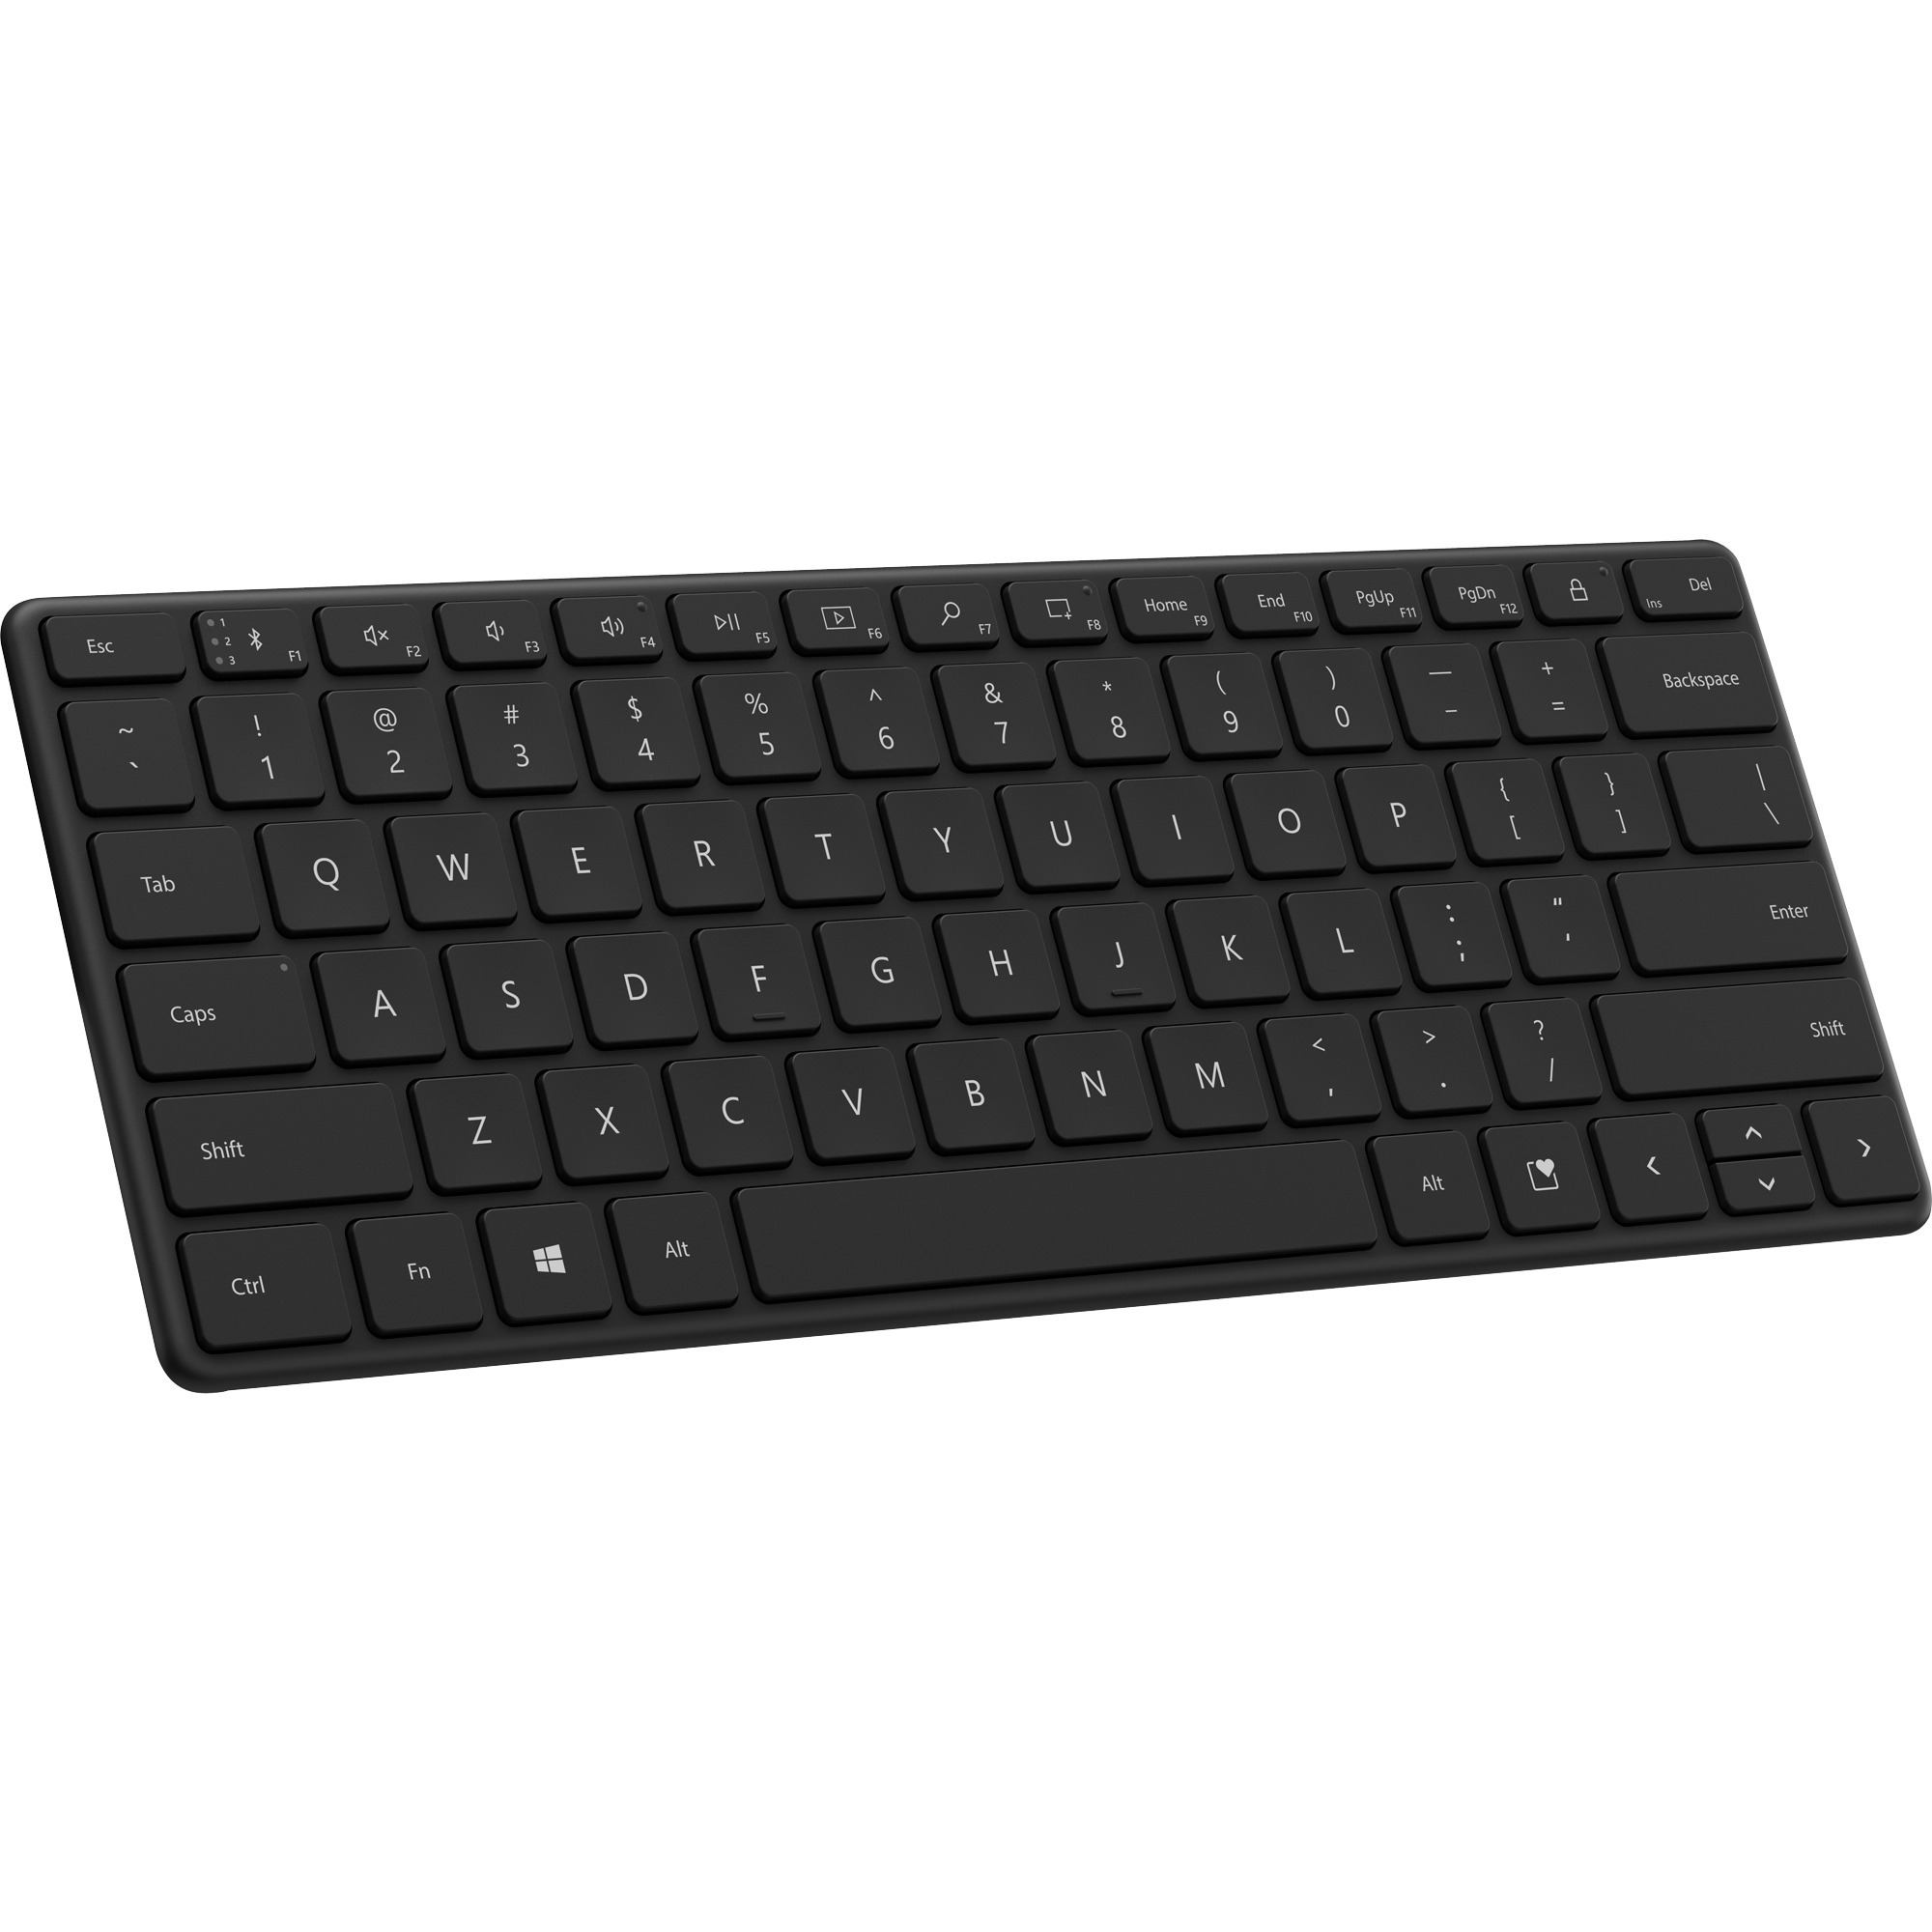 Image of Alternate - Designer Compact Keyboard, Tastatur online einkaufen bei Alternate